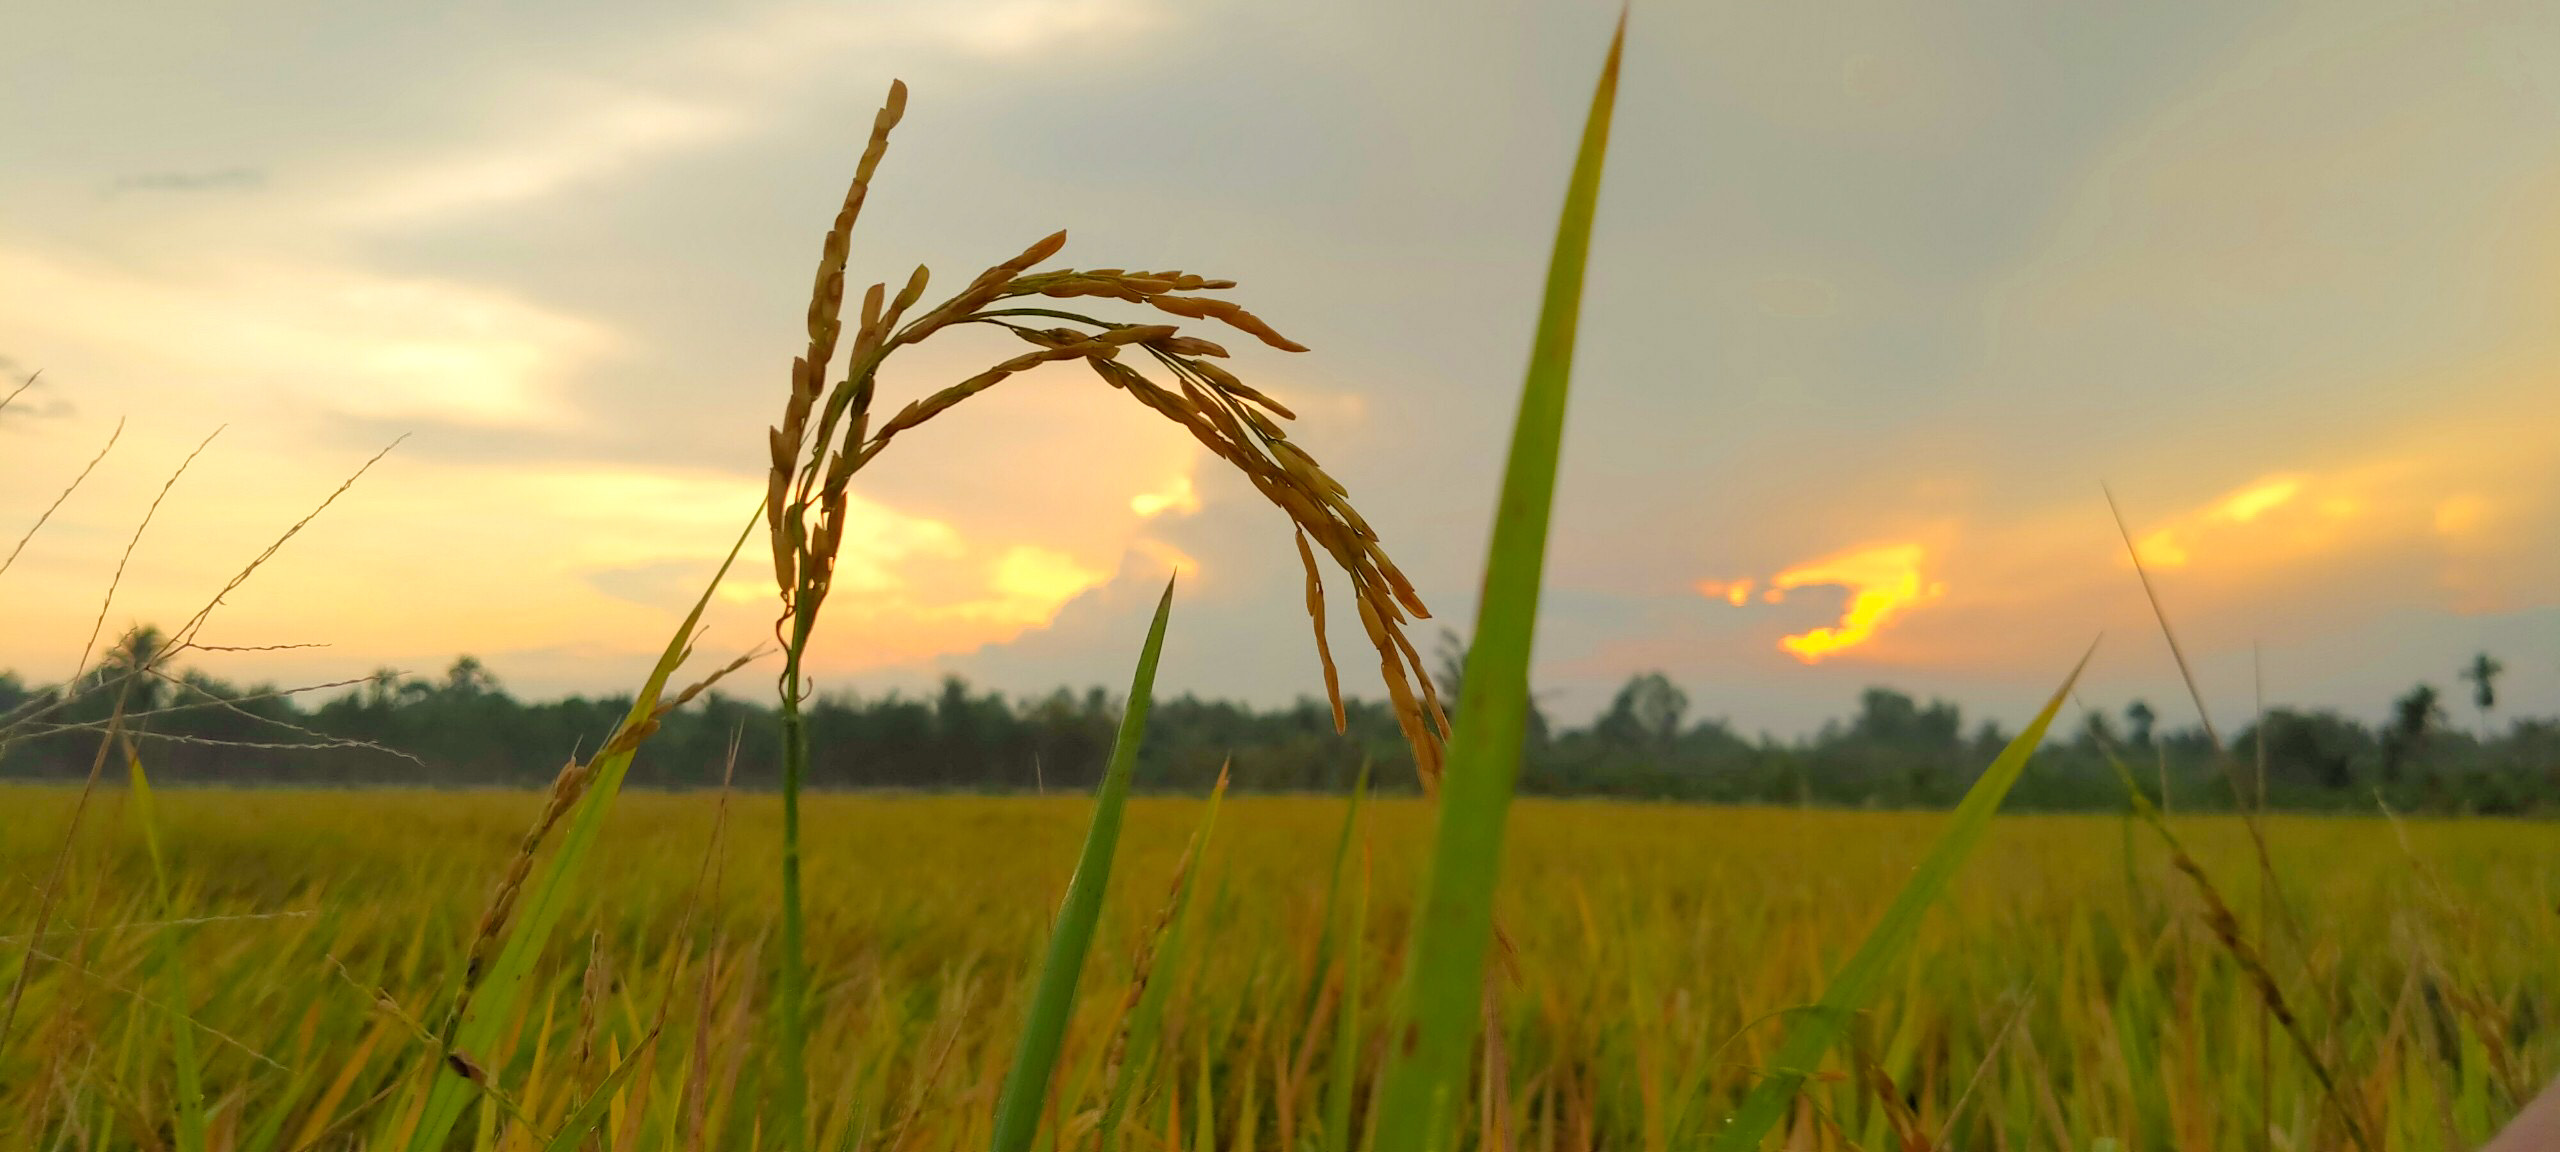 Thử tưởng tượng một cảnh tượng cánh đồng lúa rực rỡ với ánh hoàng hôn hoà quyện. Hãy cảm nhận sự đẹp đẽ của tự nhiên qua các hình ảnh liên quan đến hoàng hôn và cánh đồng lúa.